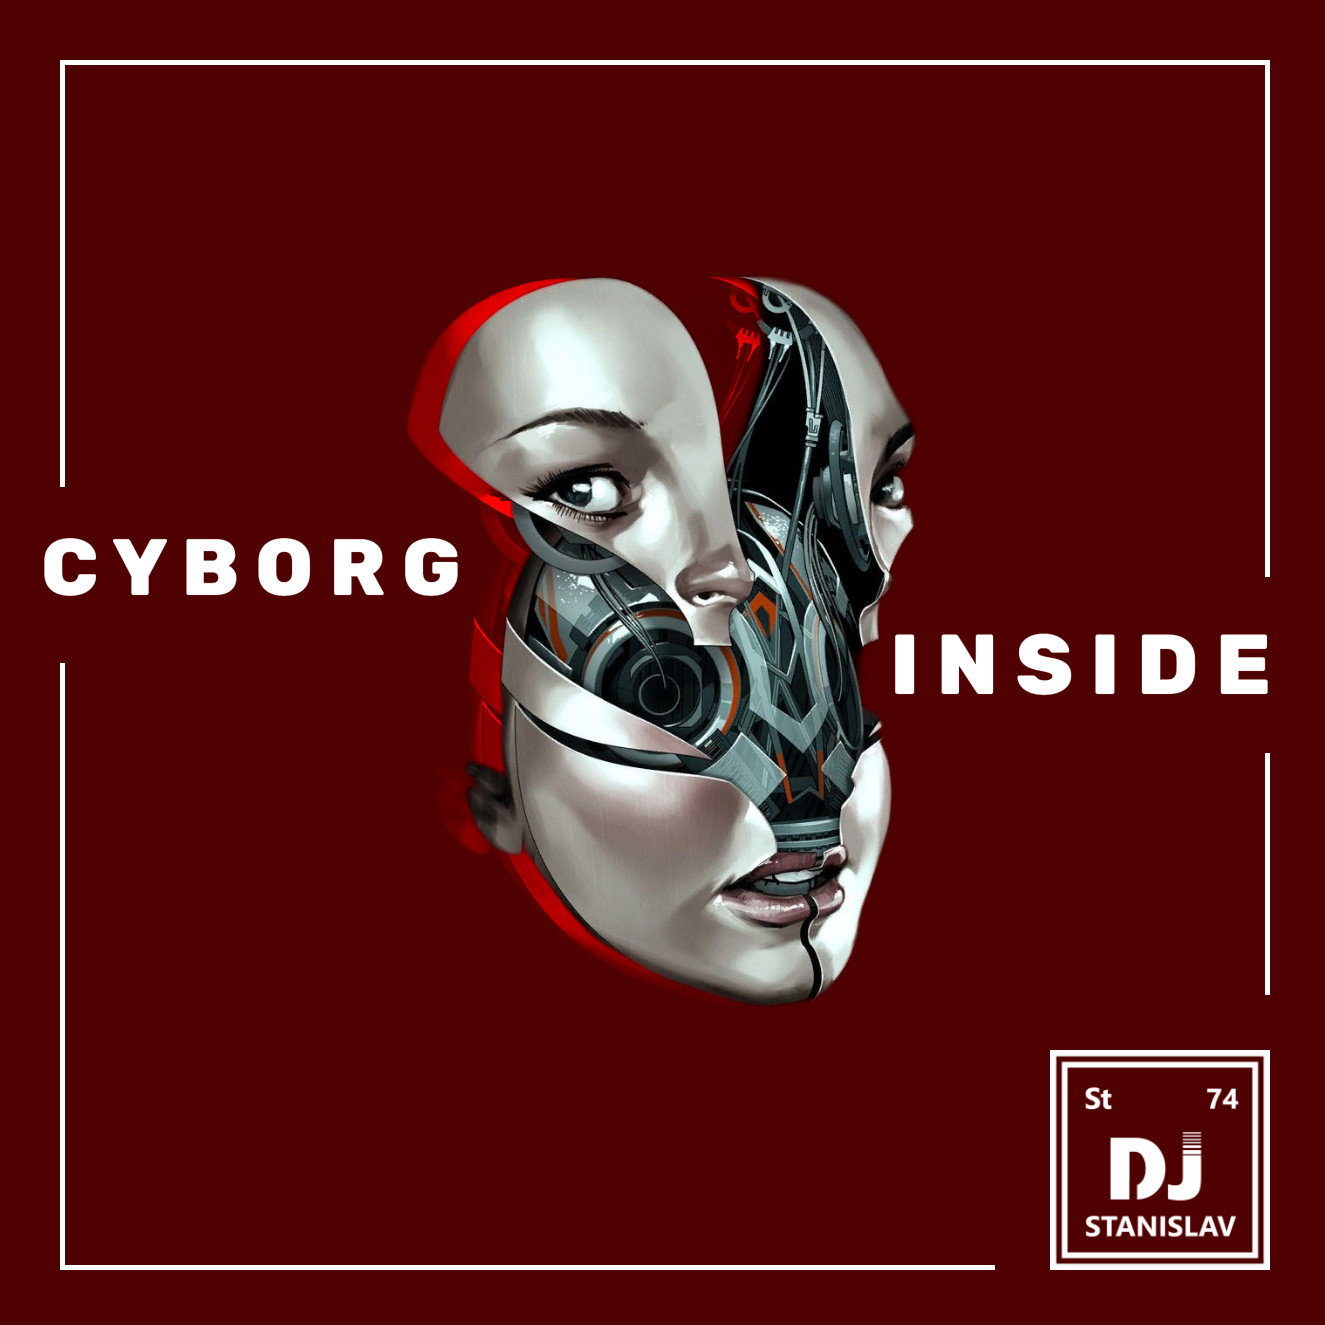 Cyborg inside